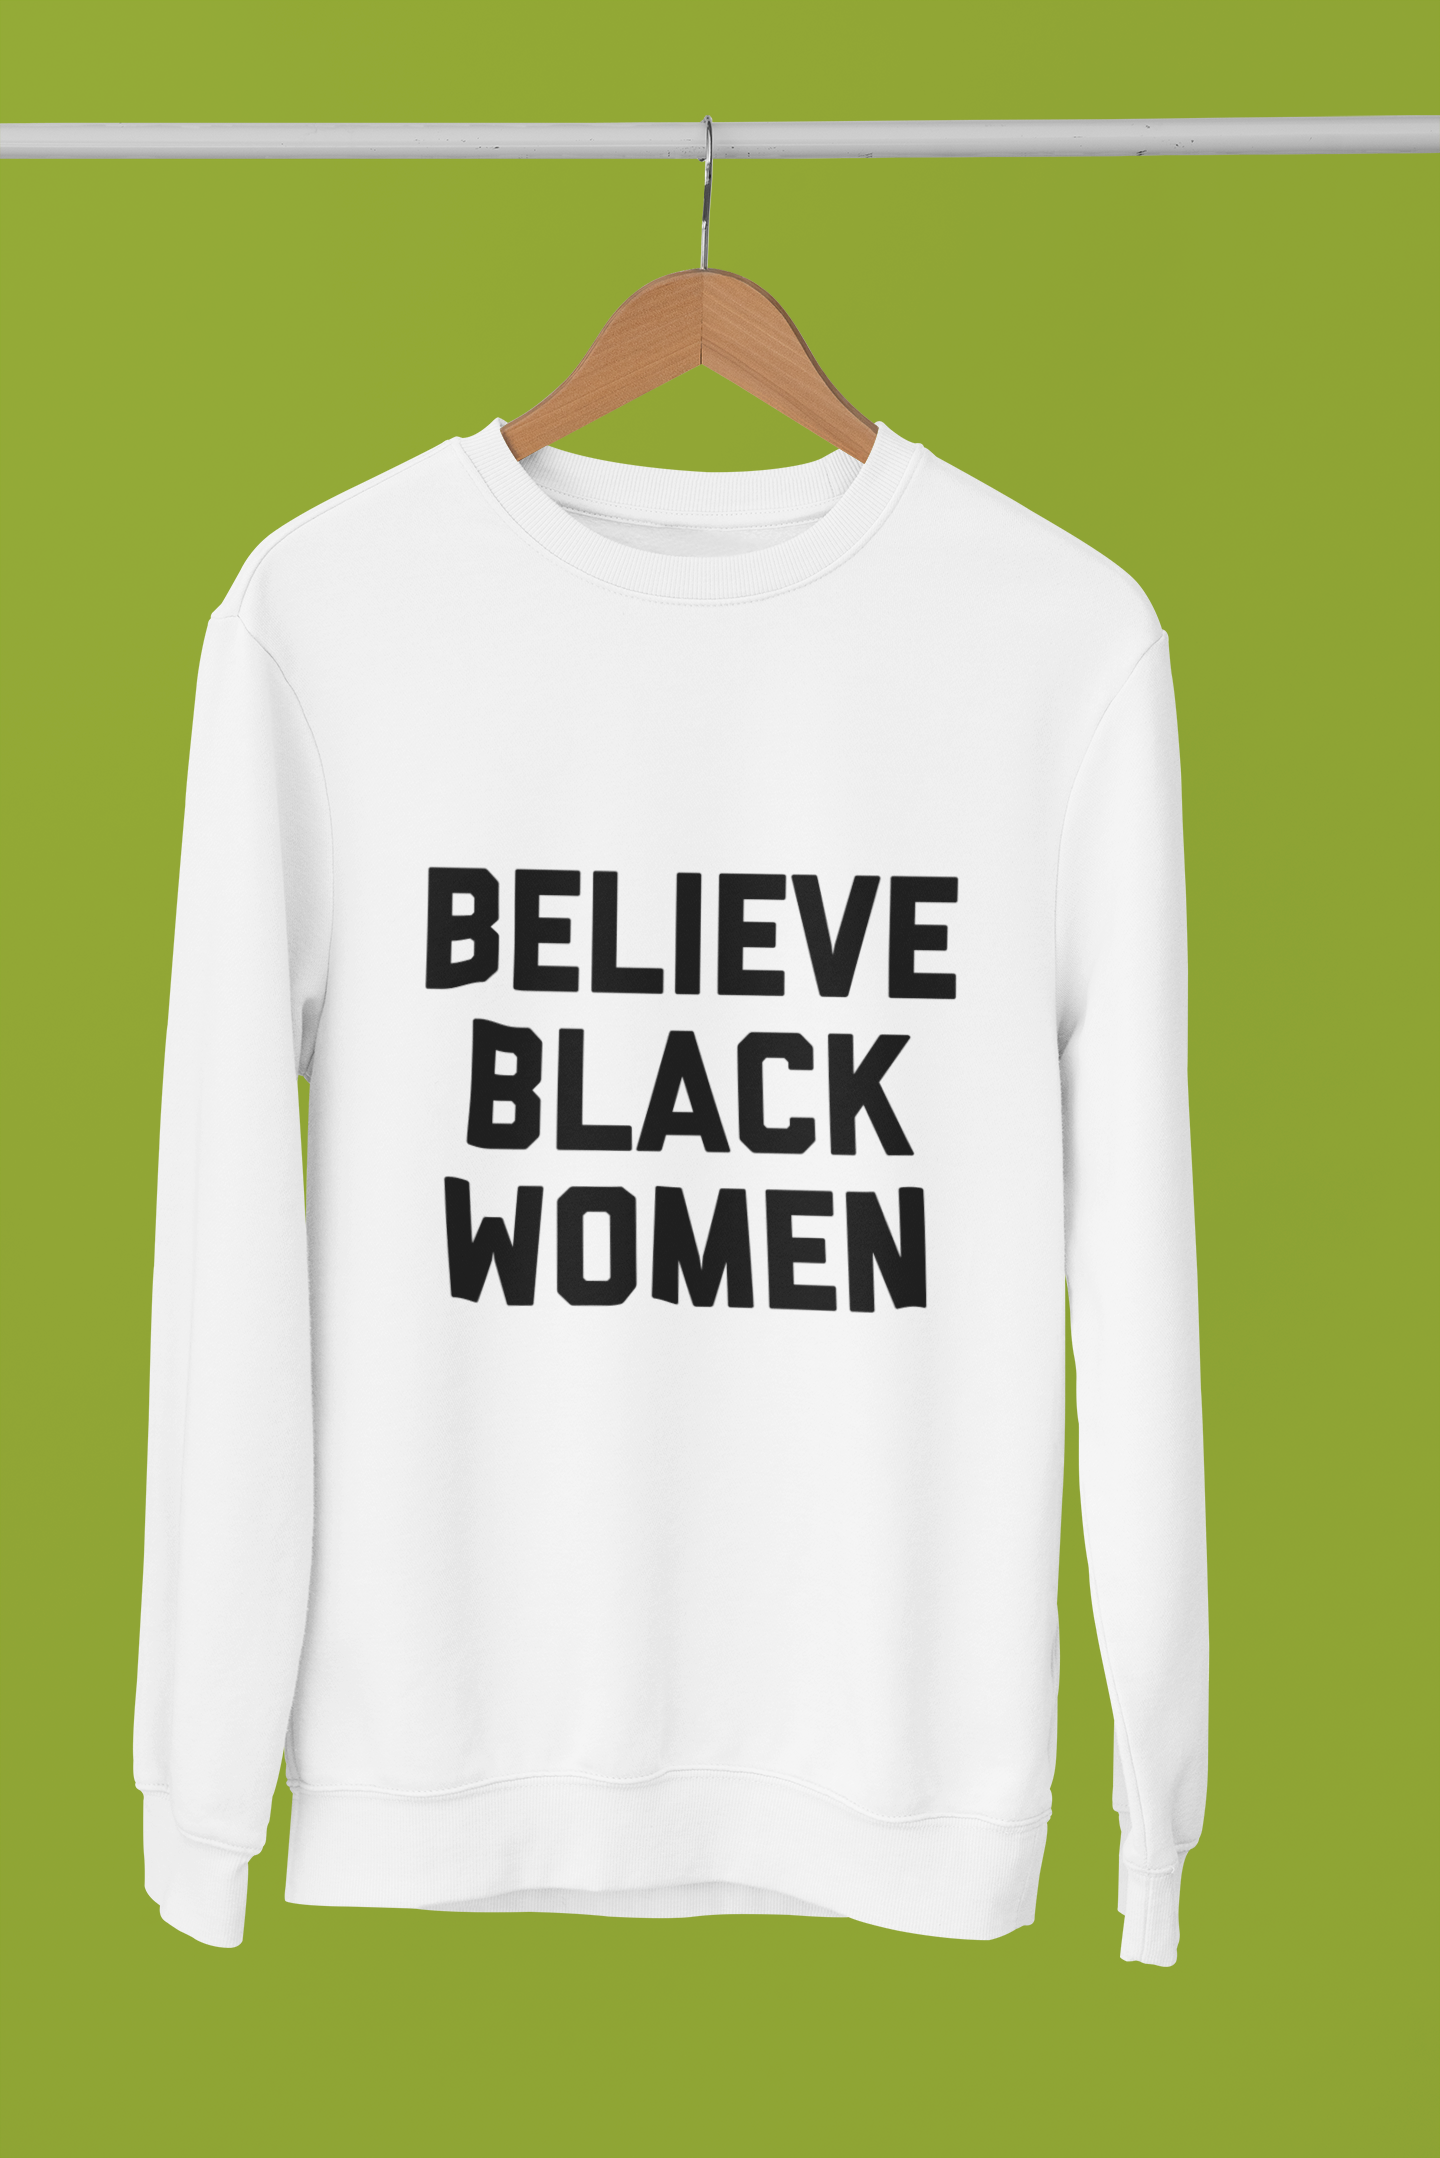 The Believe Sweatshirt